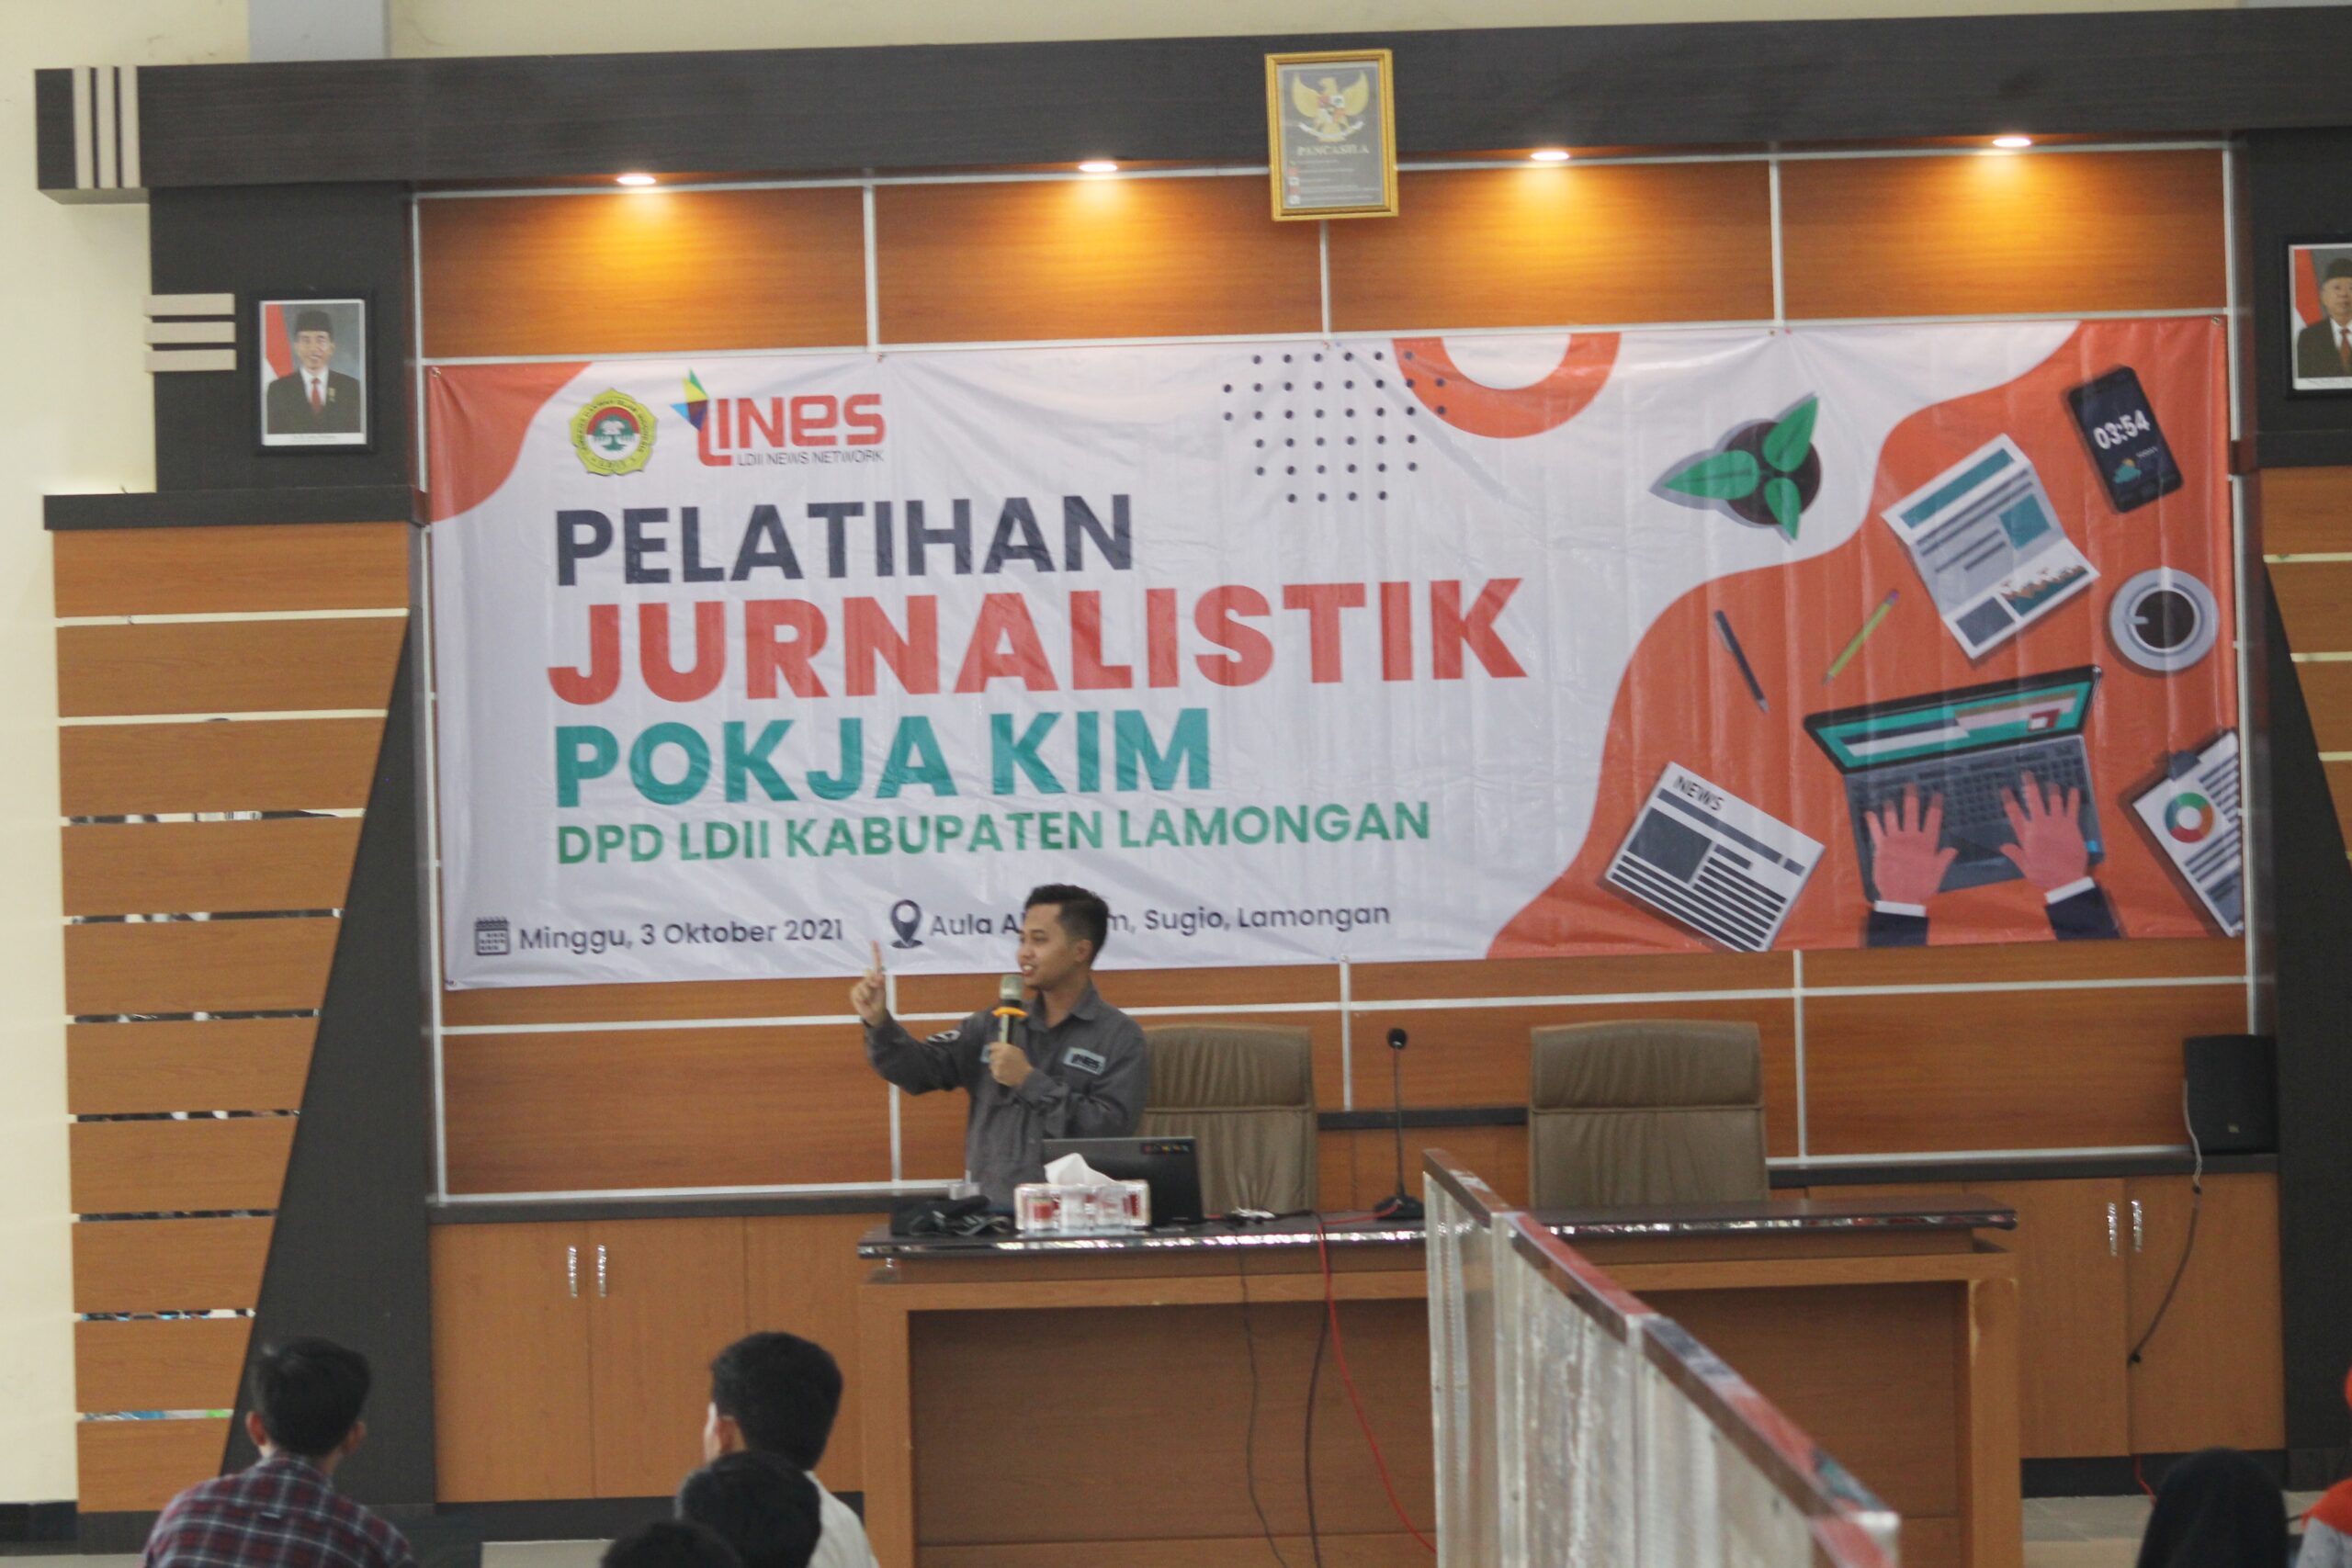 Pengurus DPW LDII Jawa Timur Ilham Mukhsin Oktavian Pemateri Pelatihan Jurnalistik di Aula Al-Karim, Sugio, Lamongan, Minggu (3/10).